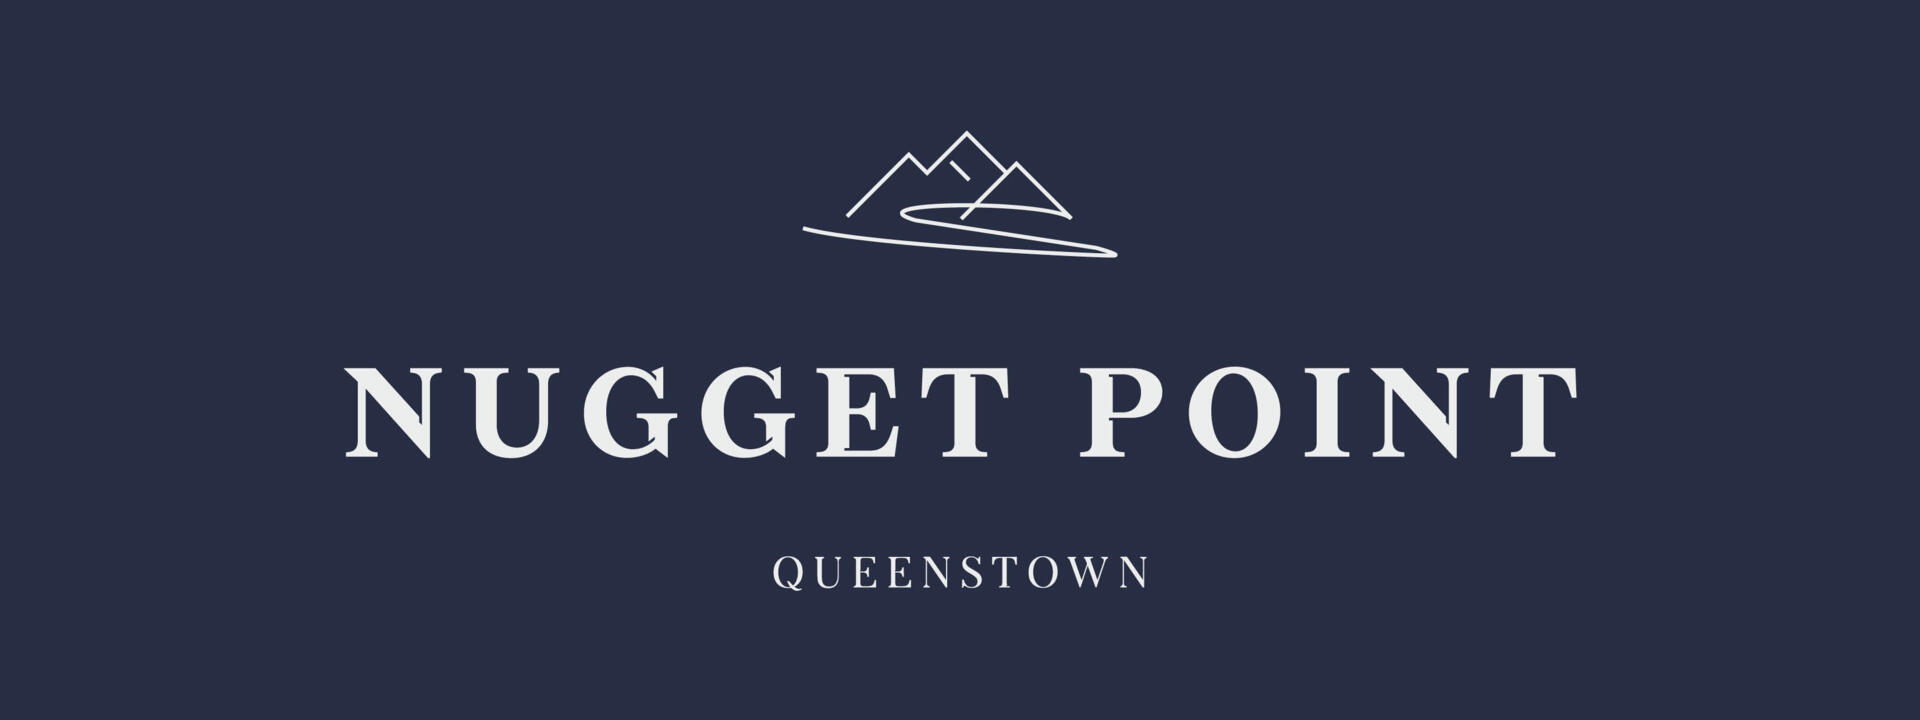 24281 NPQ Nugget Point Queenstown - Sep23 Reversed.jpg